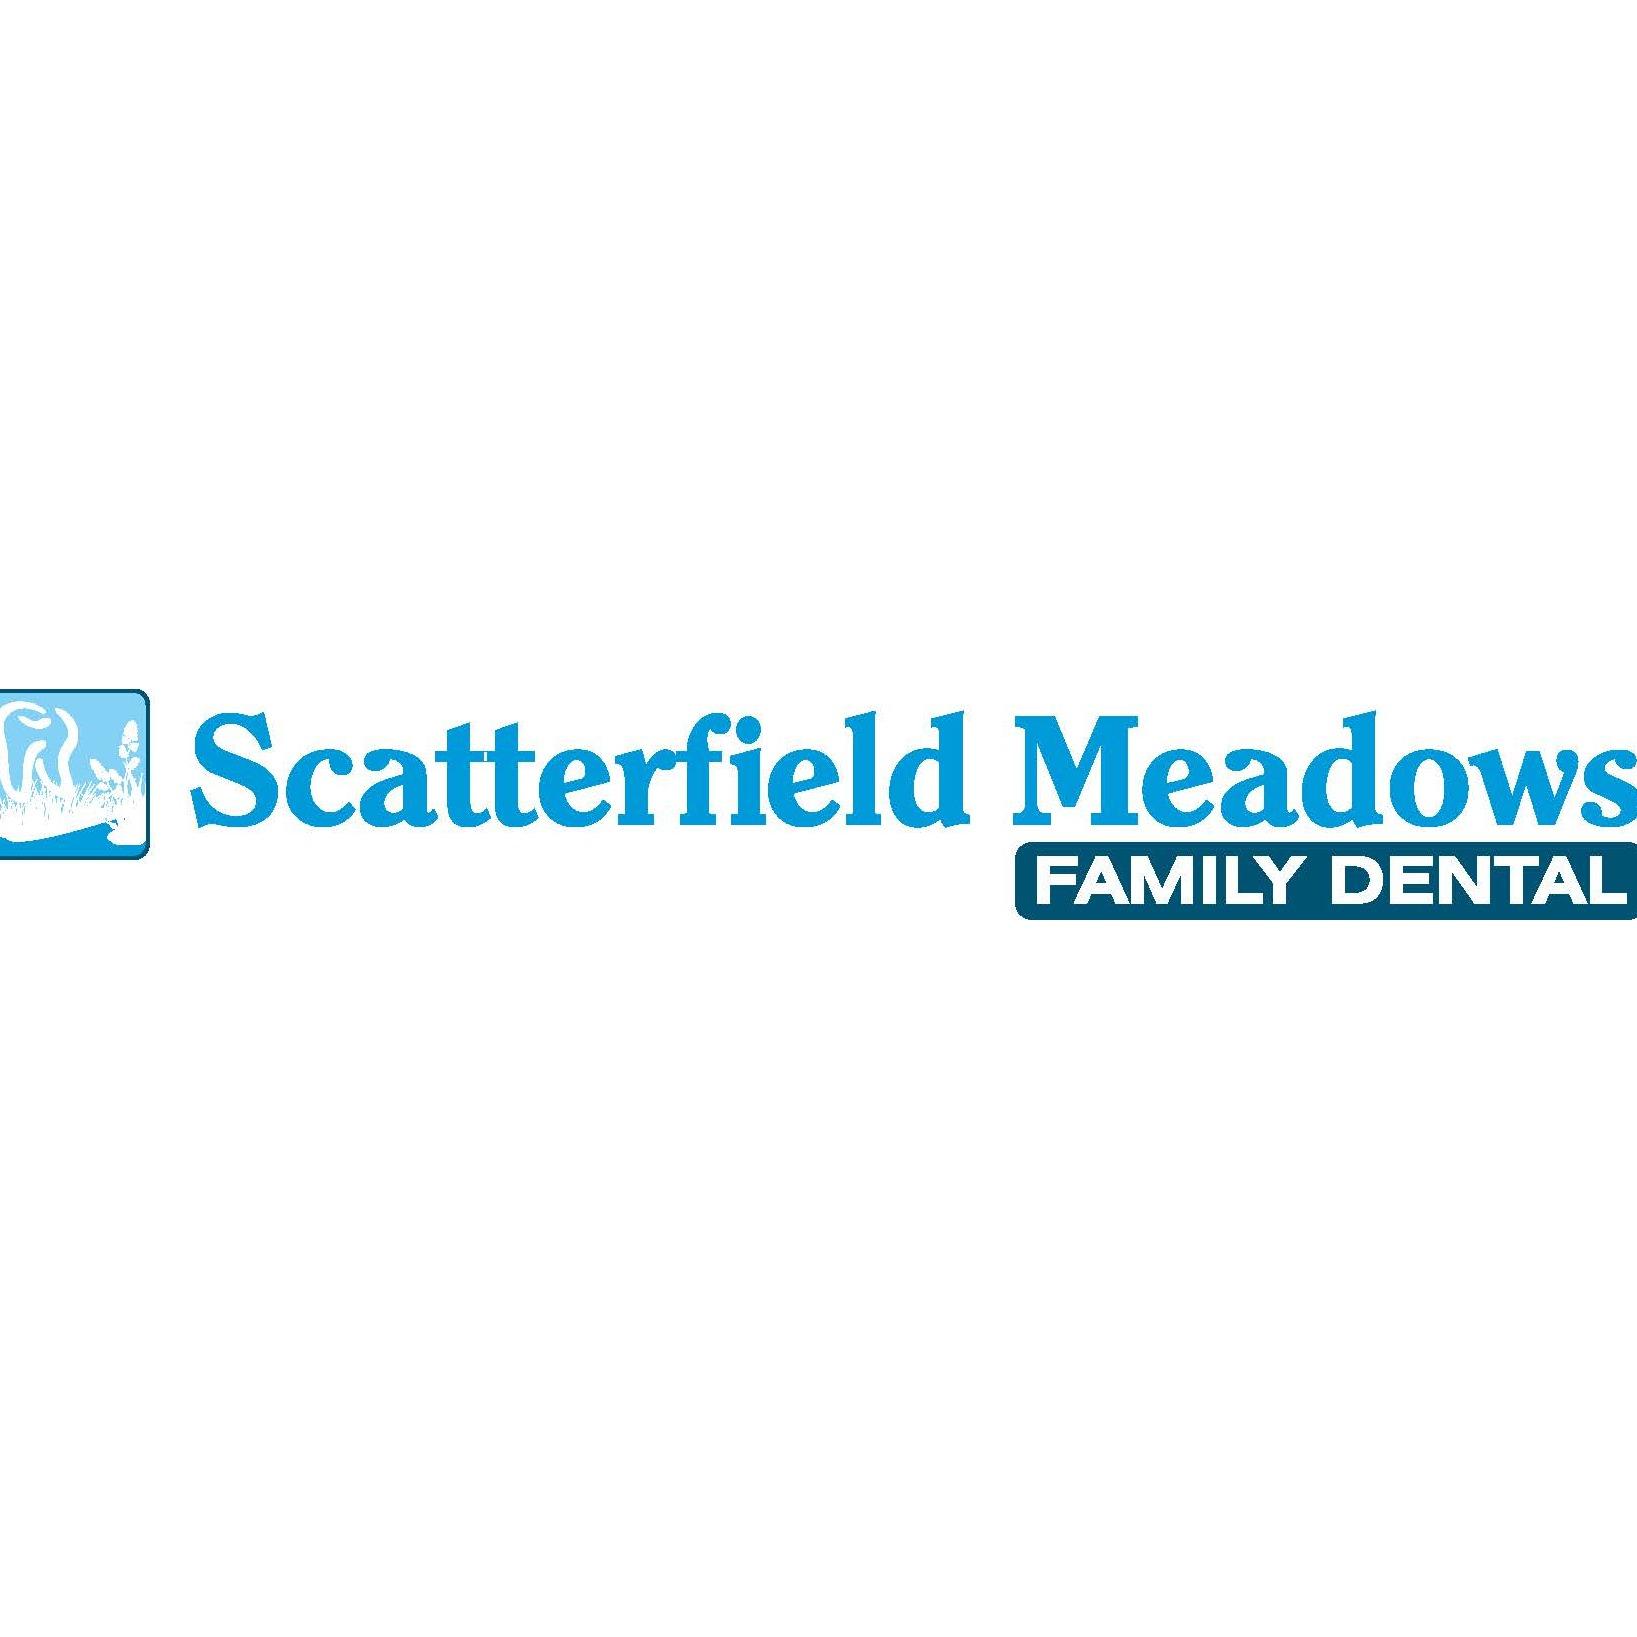 Scatterfield Meadows Family Dental